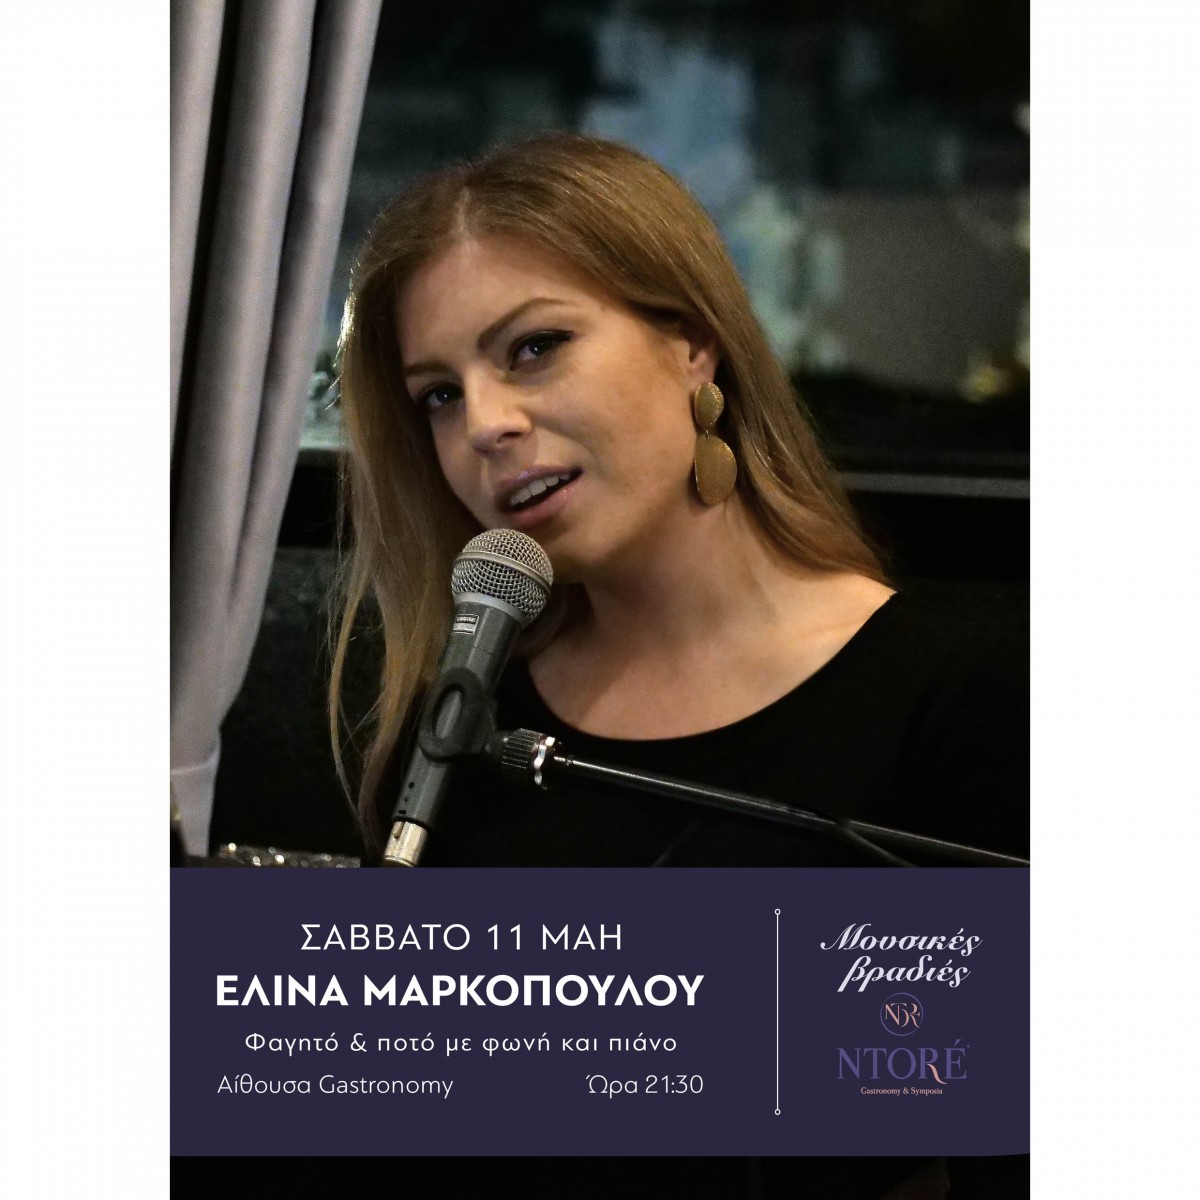 Η Ελίνα Μαρκοπούλου στη φωνή και το πιάνο, το Σάββατο 11 Μαΐου, 21:30